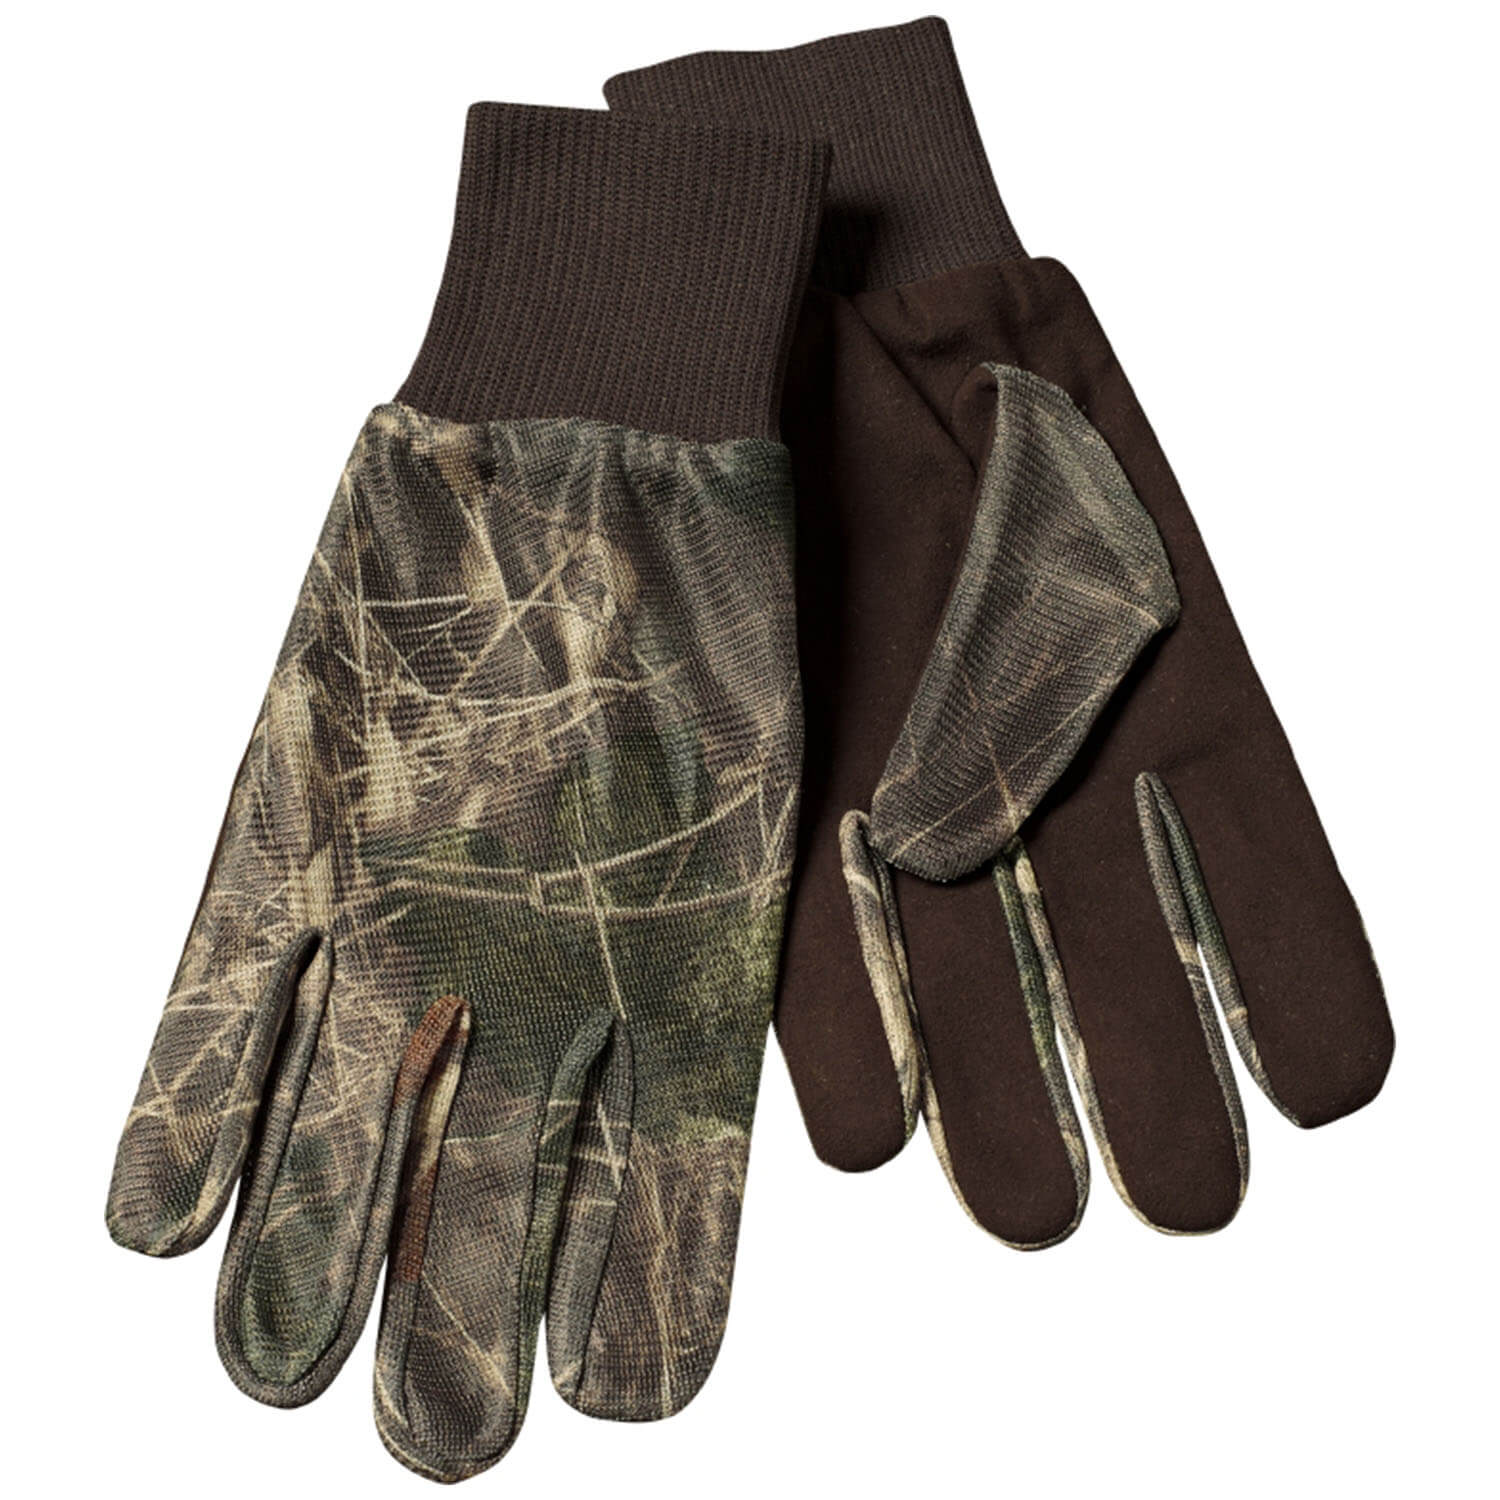  Seeland Camouflage handschoenen - Camouflage handschoenen